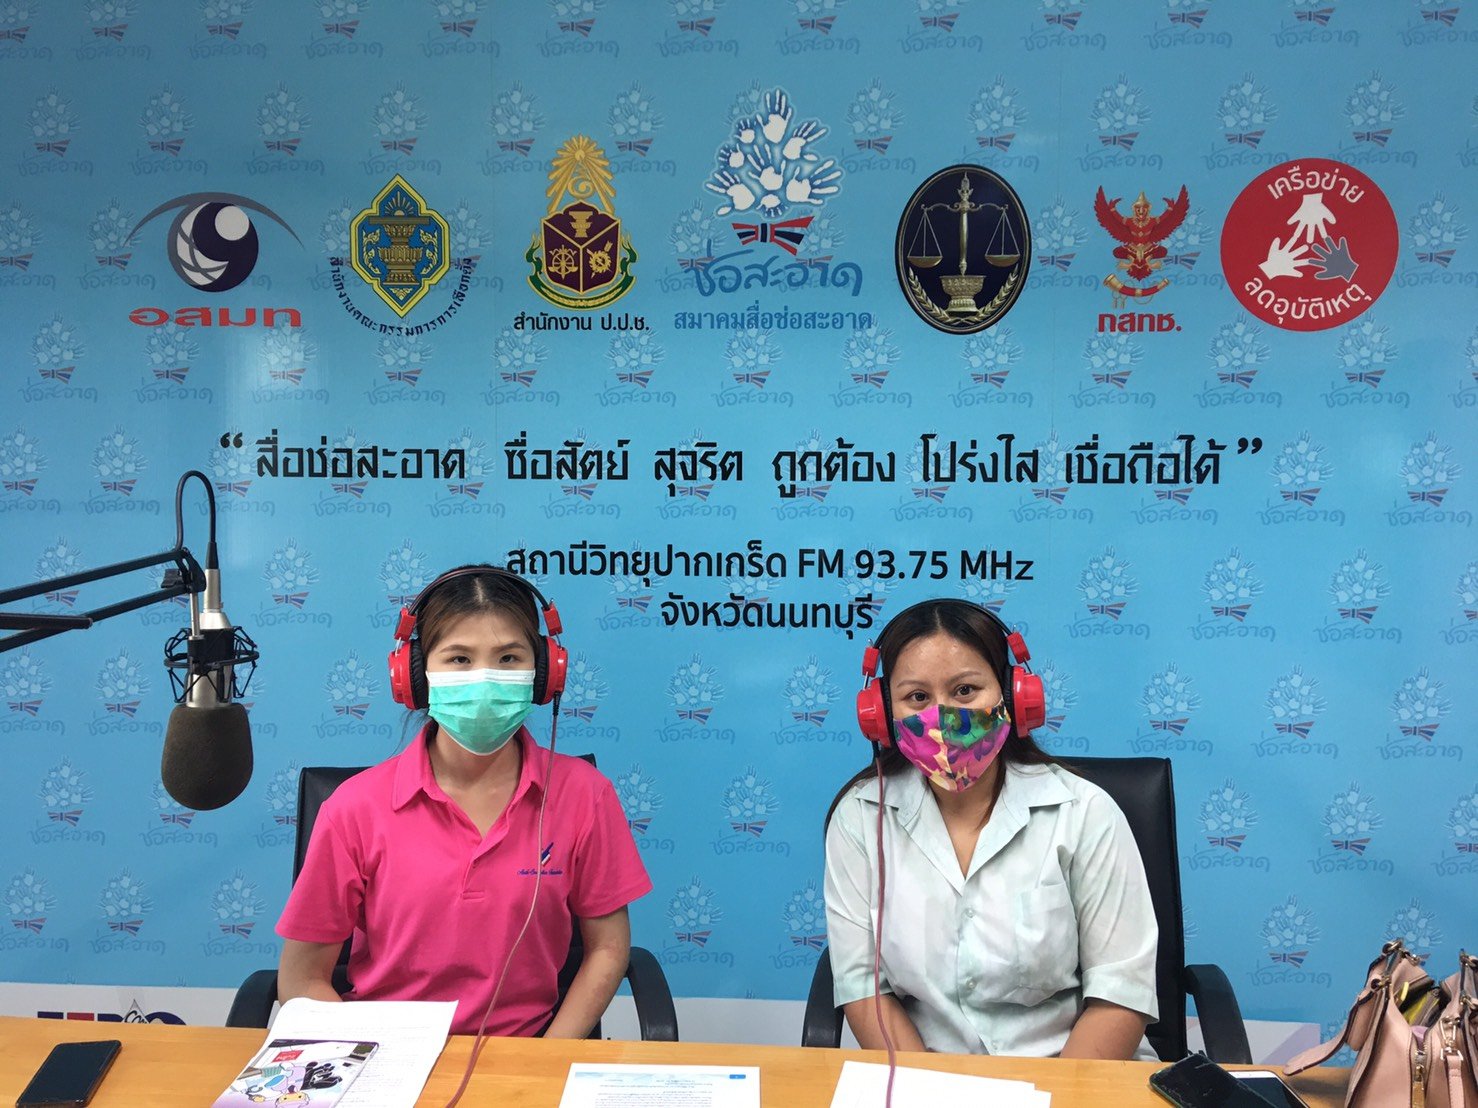 รายการ “คนไทยไม่ทนต่อการทุจริต” วันเสาร์ที่ 24 กรกฎาคม 2564 เวลา 18.00-18.30 น.